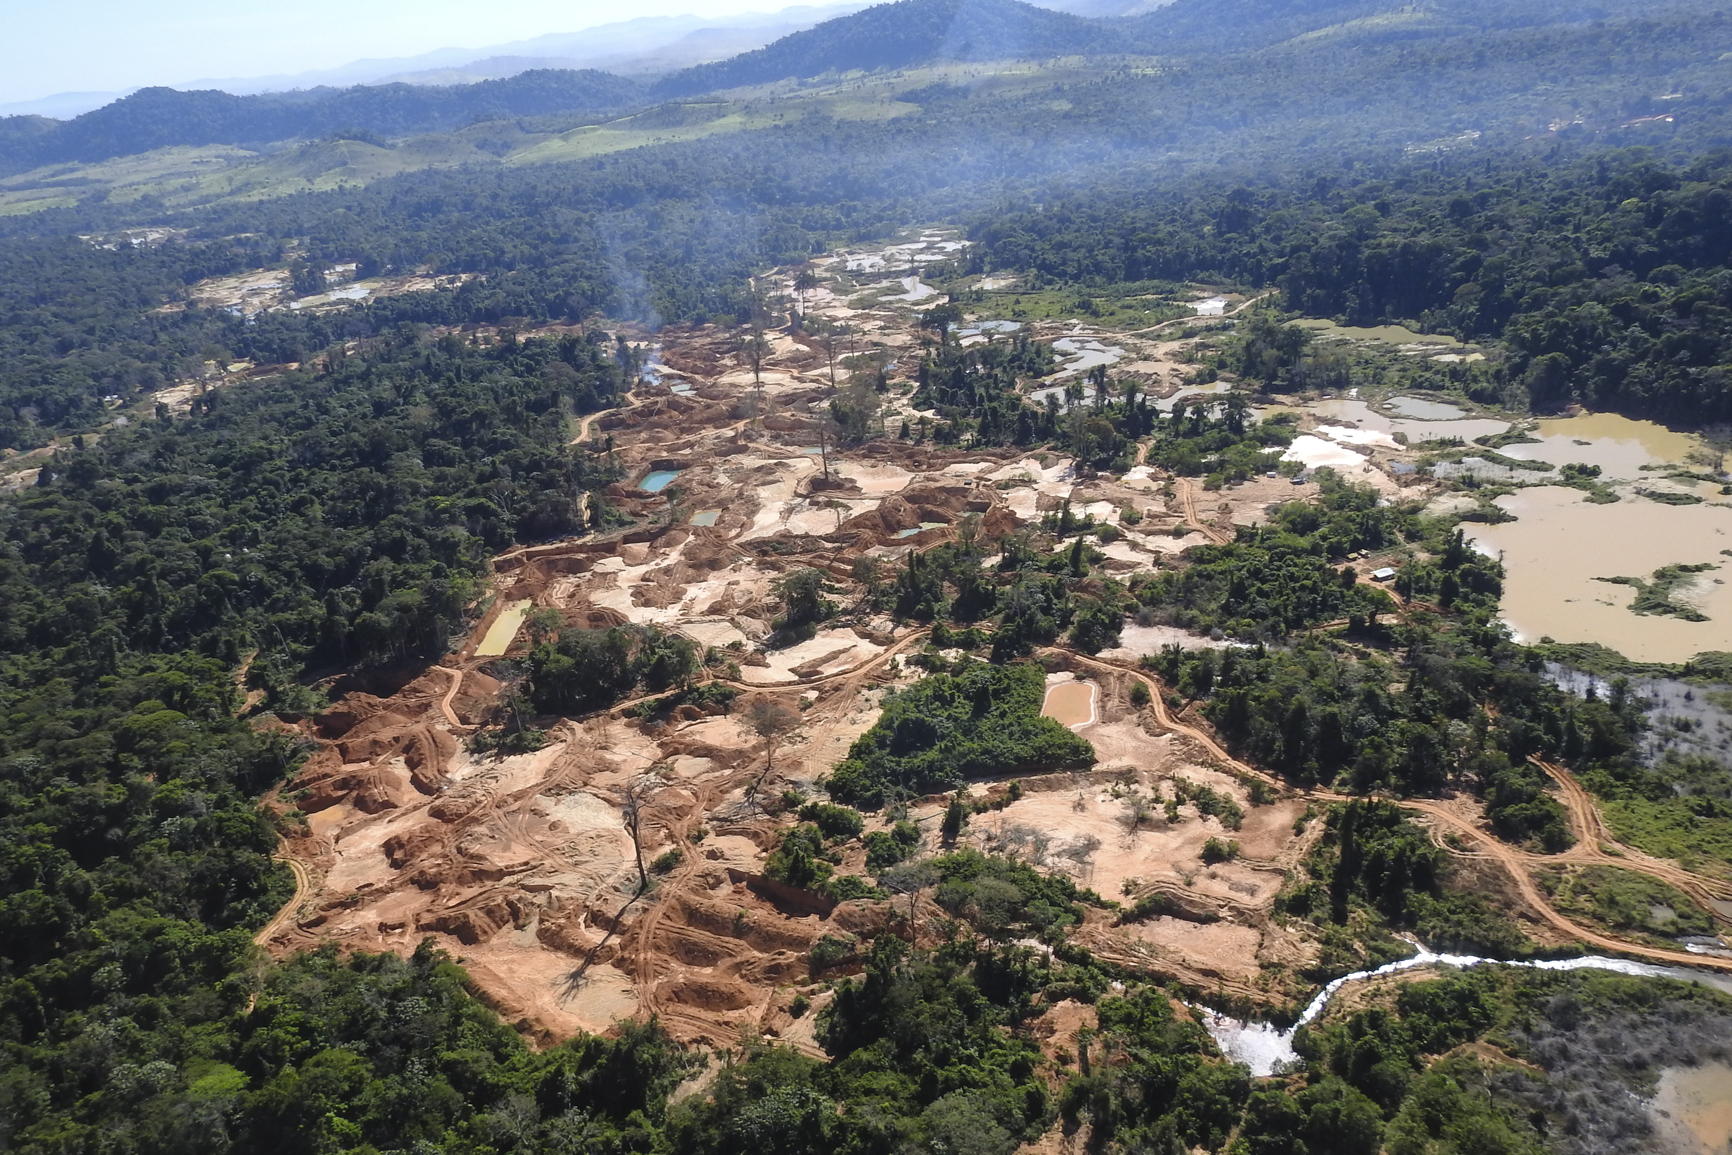 Em pleno inverno amazônico, entre os meses de janeiro e fevereiro, mais de 6,2 mil hectares de florestas foram destruídos para dar lugar à produção agropecuária e garimpo ilegal na Bacia do Rio Xingu